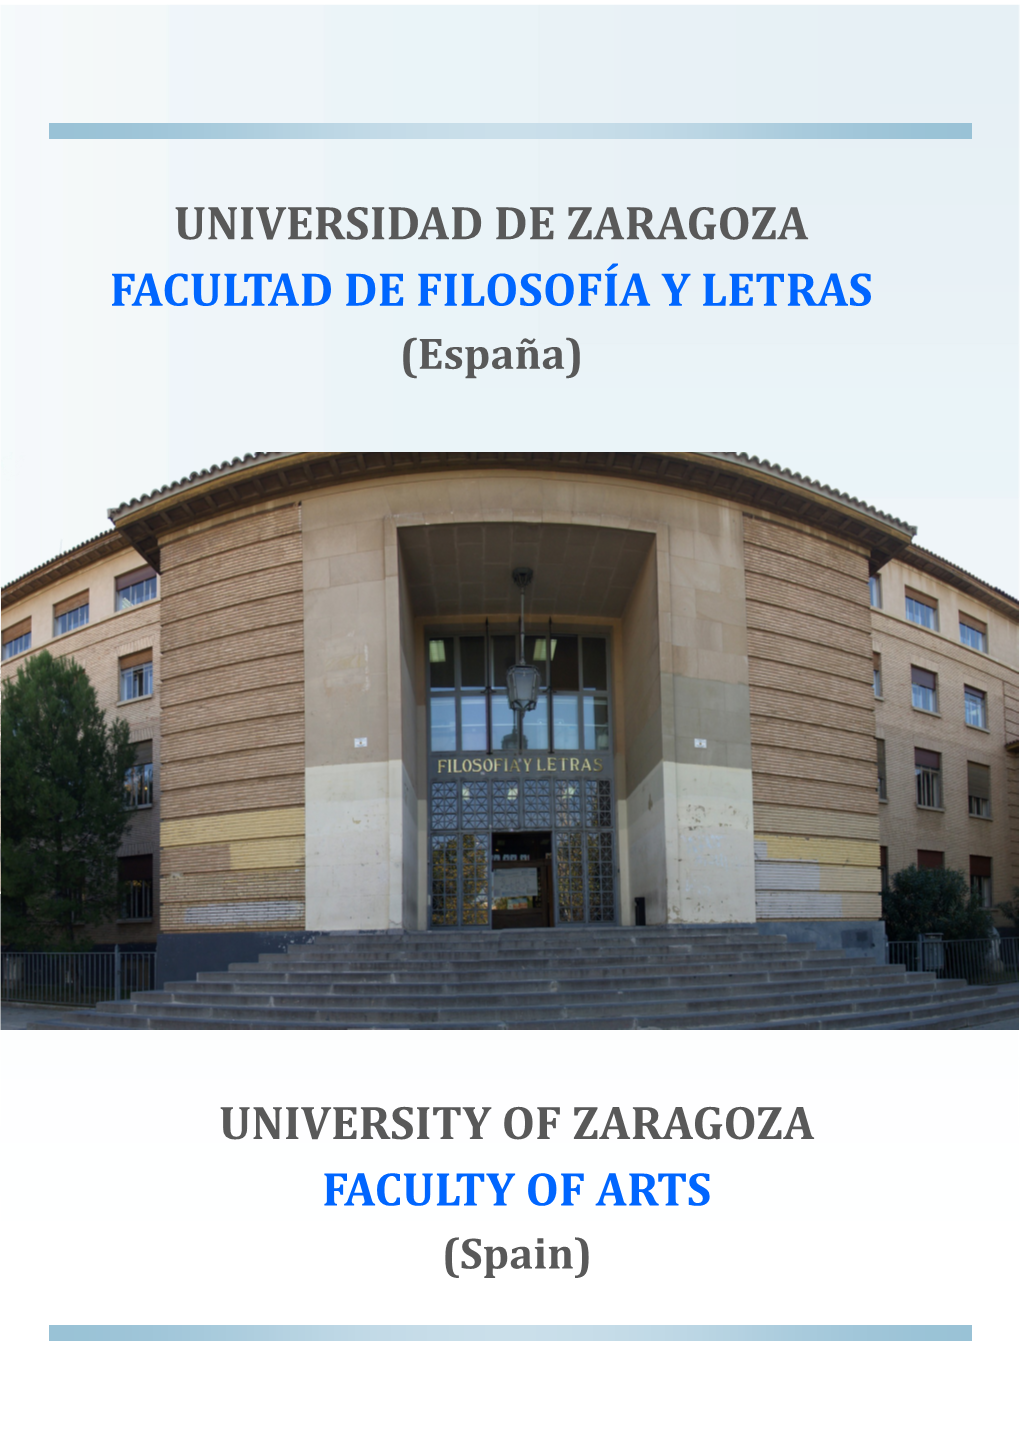 UNIVERSIDAD DE ZARAGOZA FACULTAD DE FILOSOFÍA Y LETRAS (España)